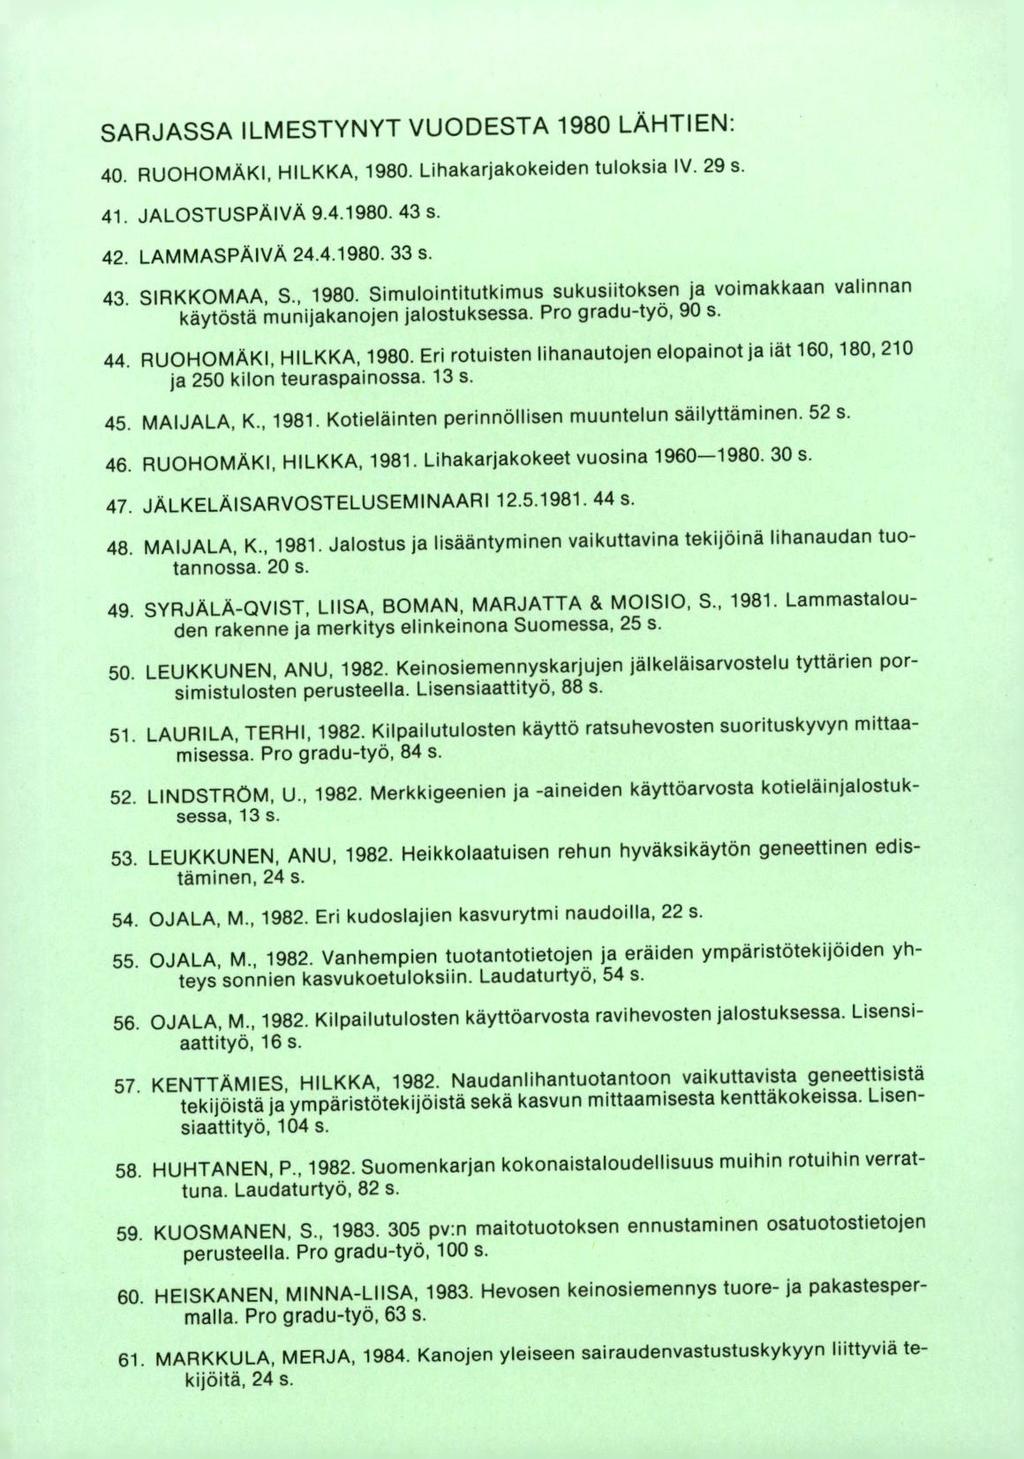 SARJASSA ILMESTYNYT VUODESTA 1980 LÄHTIEN: RUOHOMAKI, HILKKA, 1980. Lihakarjakokeiden tuloksia IV. 29 s. JALOSTUSPÄIVÄ 9.4.1980. 43 s. LAMMASPÄIVA 24.4.1980. 33 s SIRKKOMAA, S., 1980. Simulointitutkimus sukusiitoksen ja voimakkaan valinnan käytöstä munijakanojen jalostuksessa.